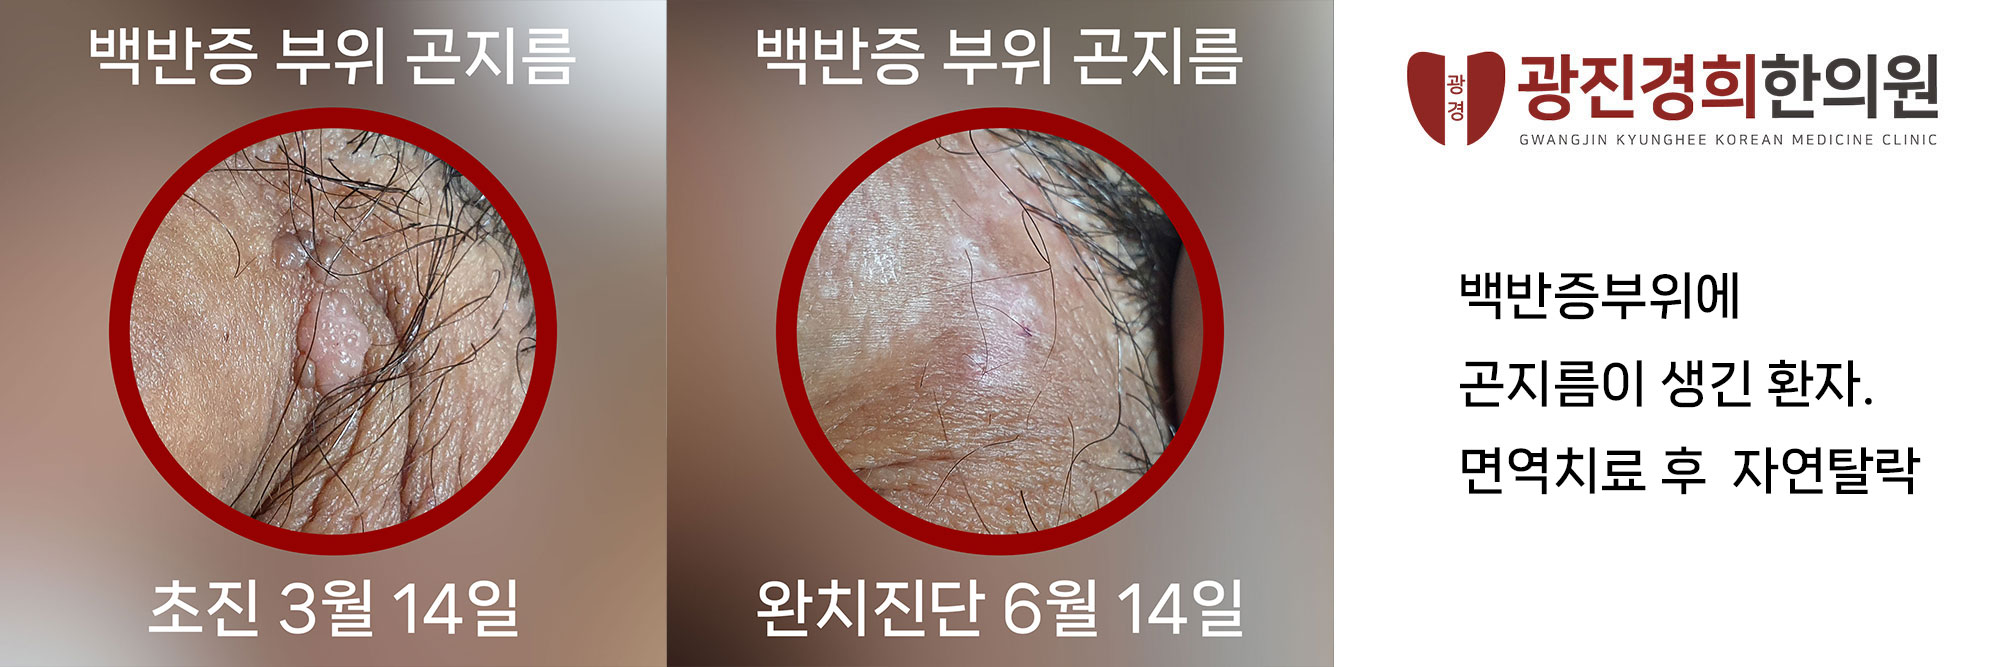 광진경희한의원 | 서울곤지름병원